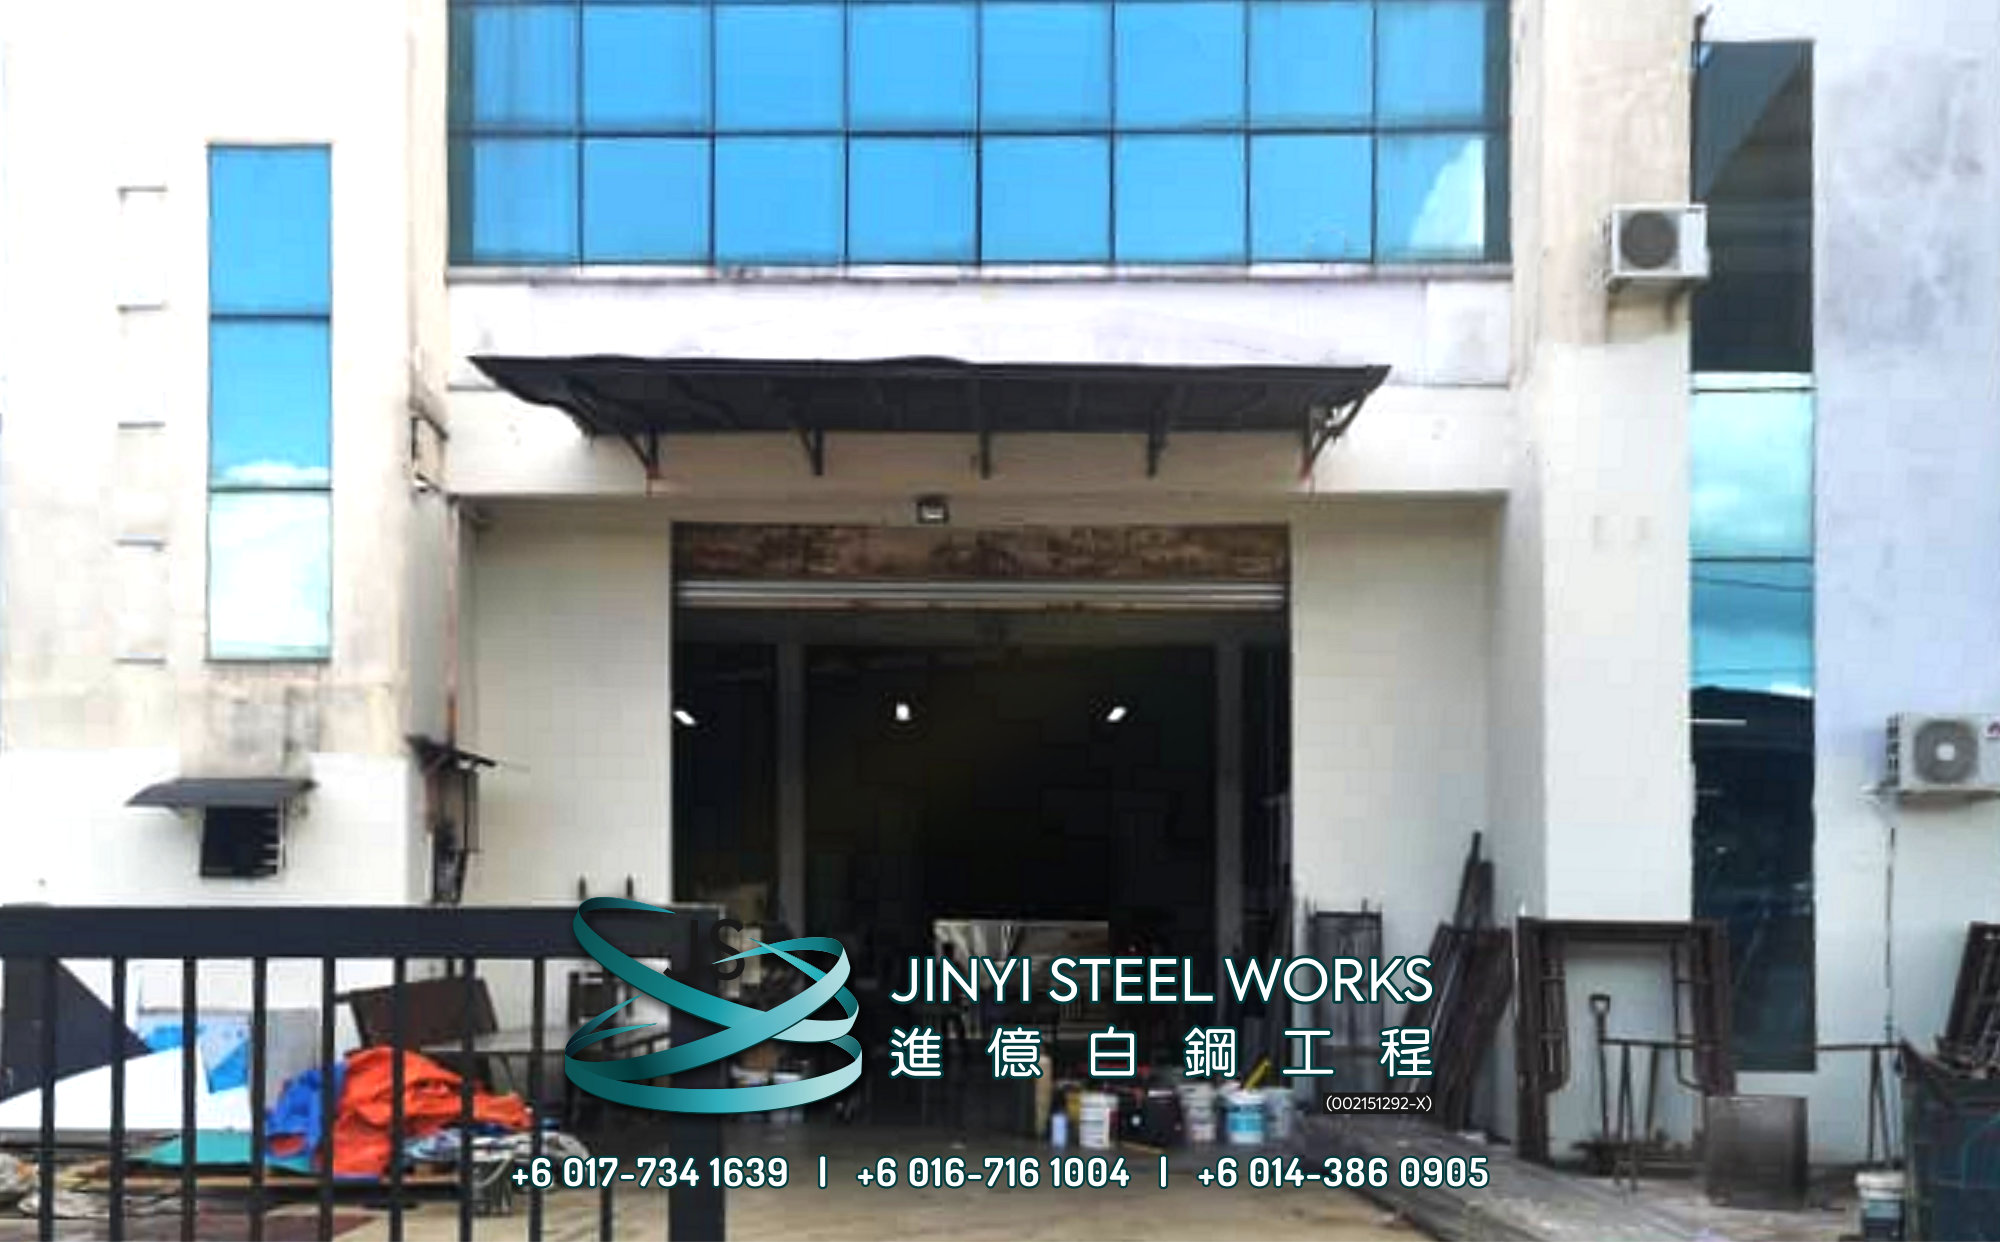 Jinyi Steel Works Pengilang Produk Besi dan Keluli Tahan Karat Menyesuaikan dan Memasangnya Untuk Anda Johor Melaka Negeri Sembilan Kuala Lumpur Selangor Pahang Batu Pahat Stainless Steel B01